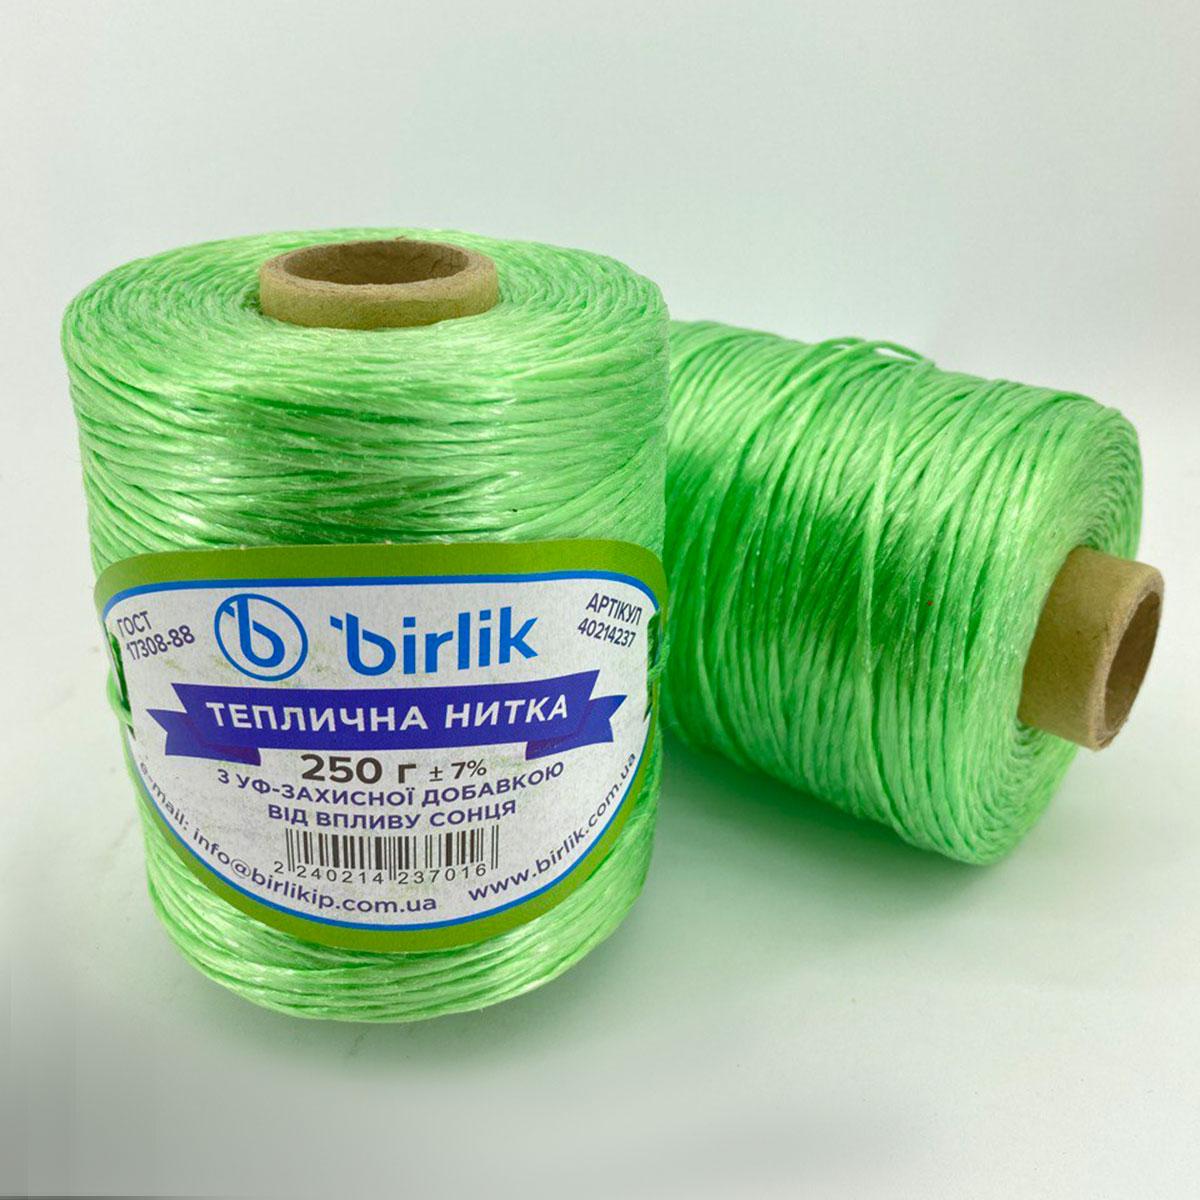 Турецька кольорова нитка для підв'язування рослин 2 мм 700 г (зелена)